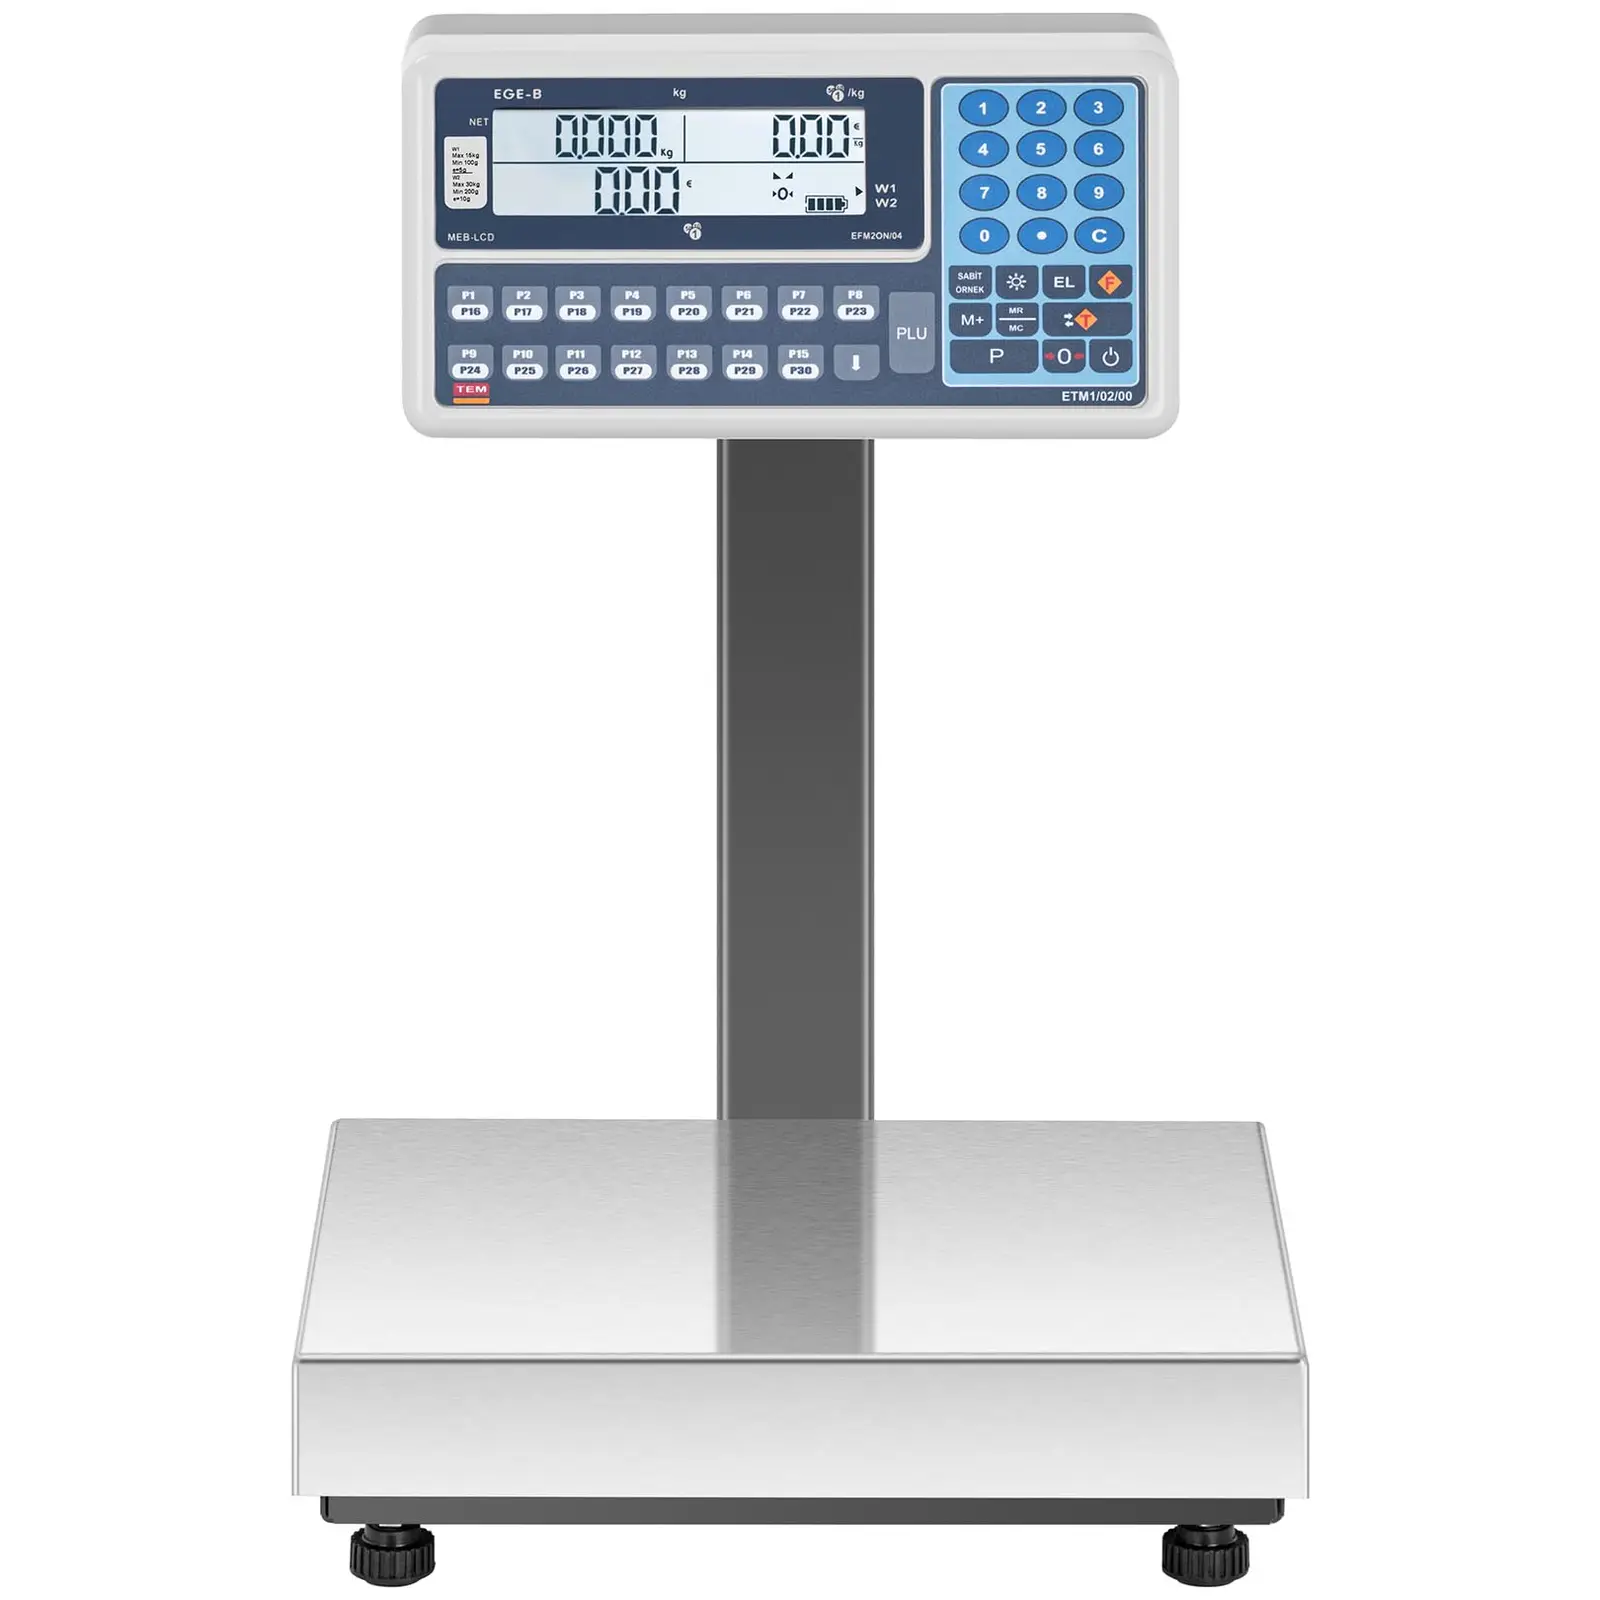 Waga sklepowa - 15 kg (5 g) / 30 kg (10 g) - LCD - legalizacja